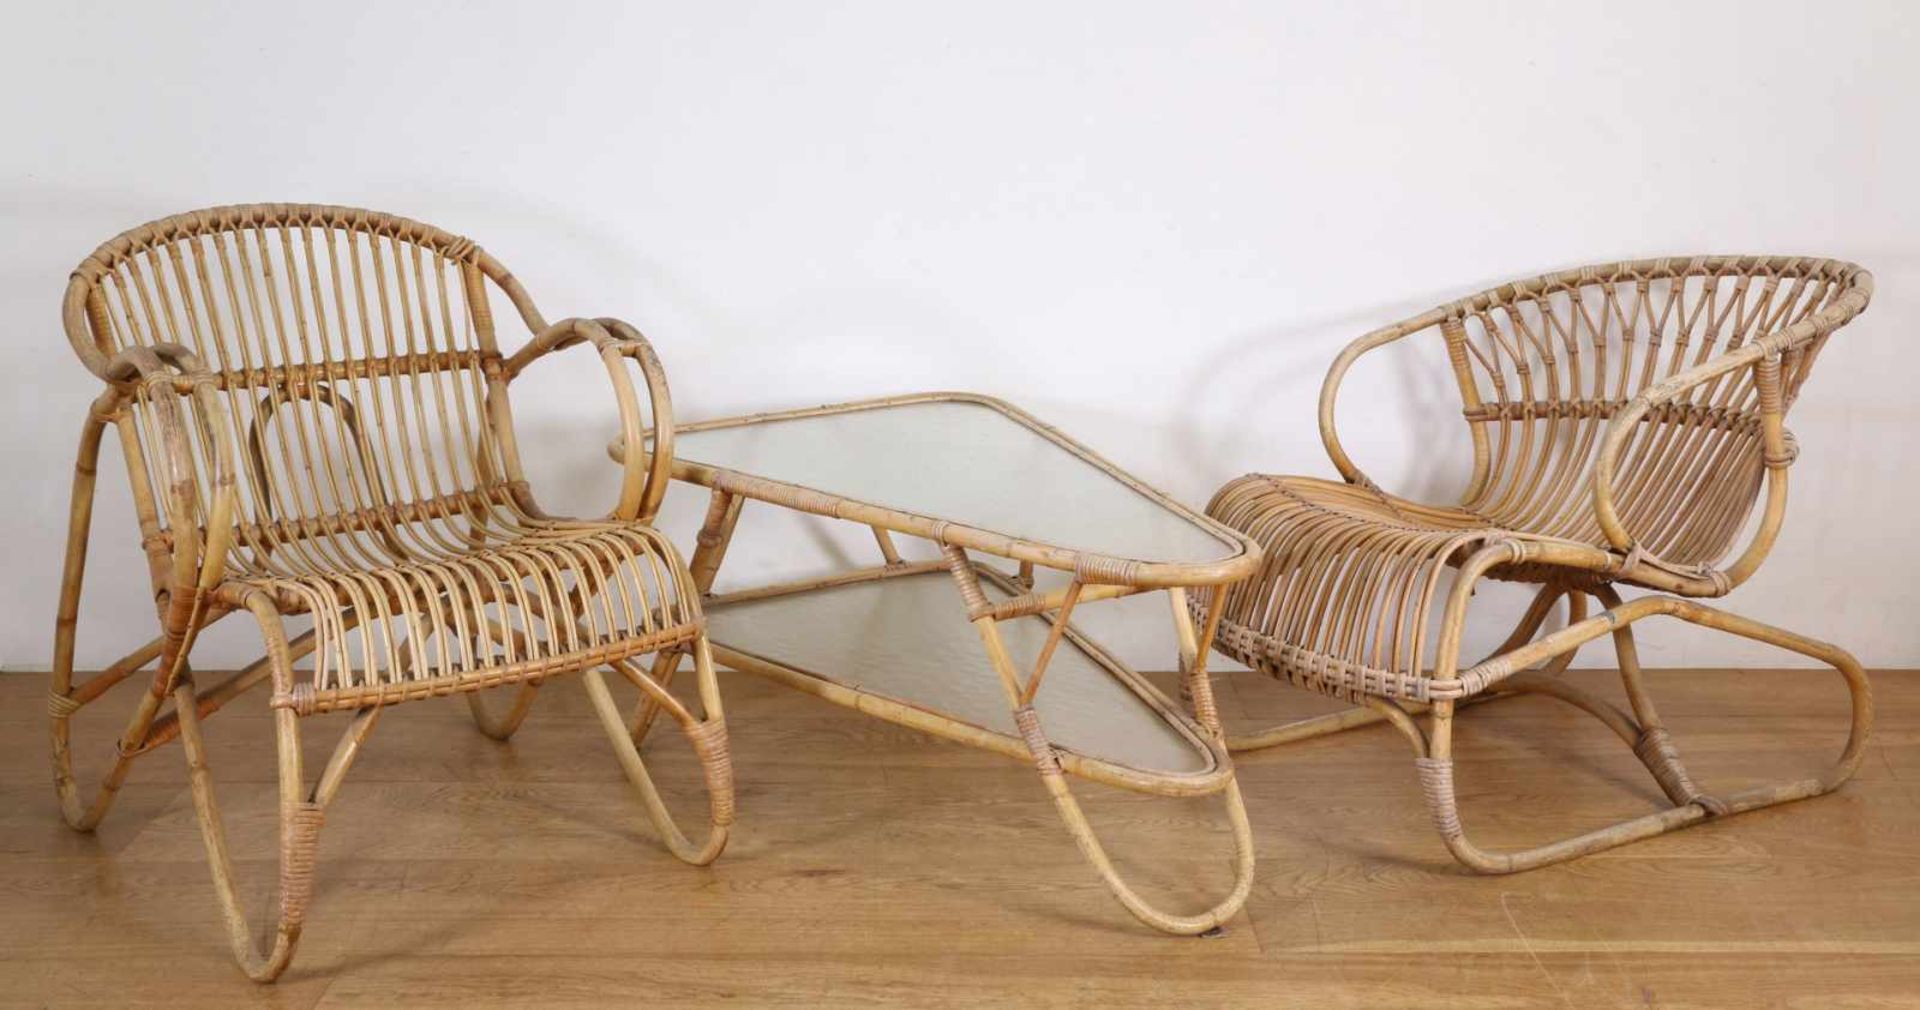 Twee rotan fauteuils, gemerkt: Trio Noordwolde Holland,hierbij driehoekvormige rotan salontafel